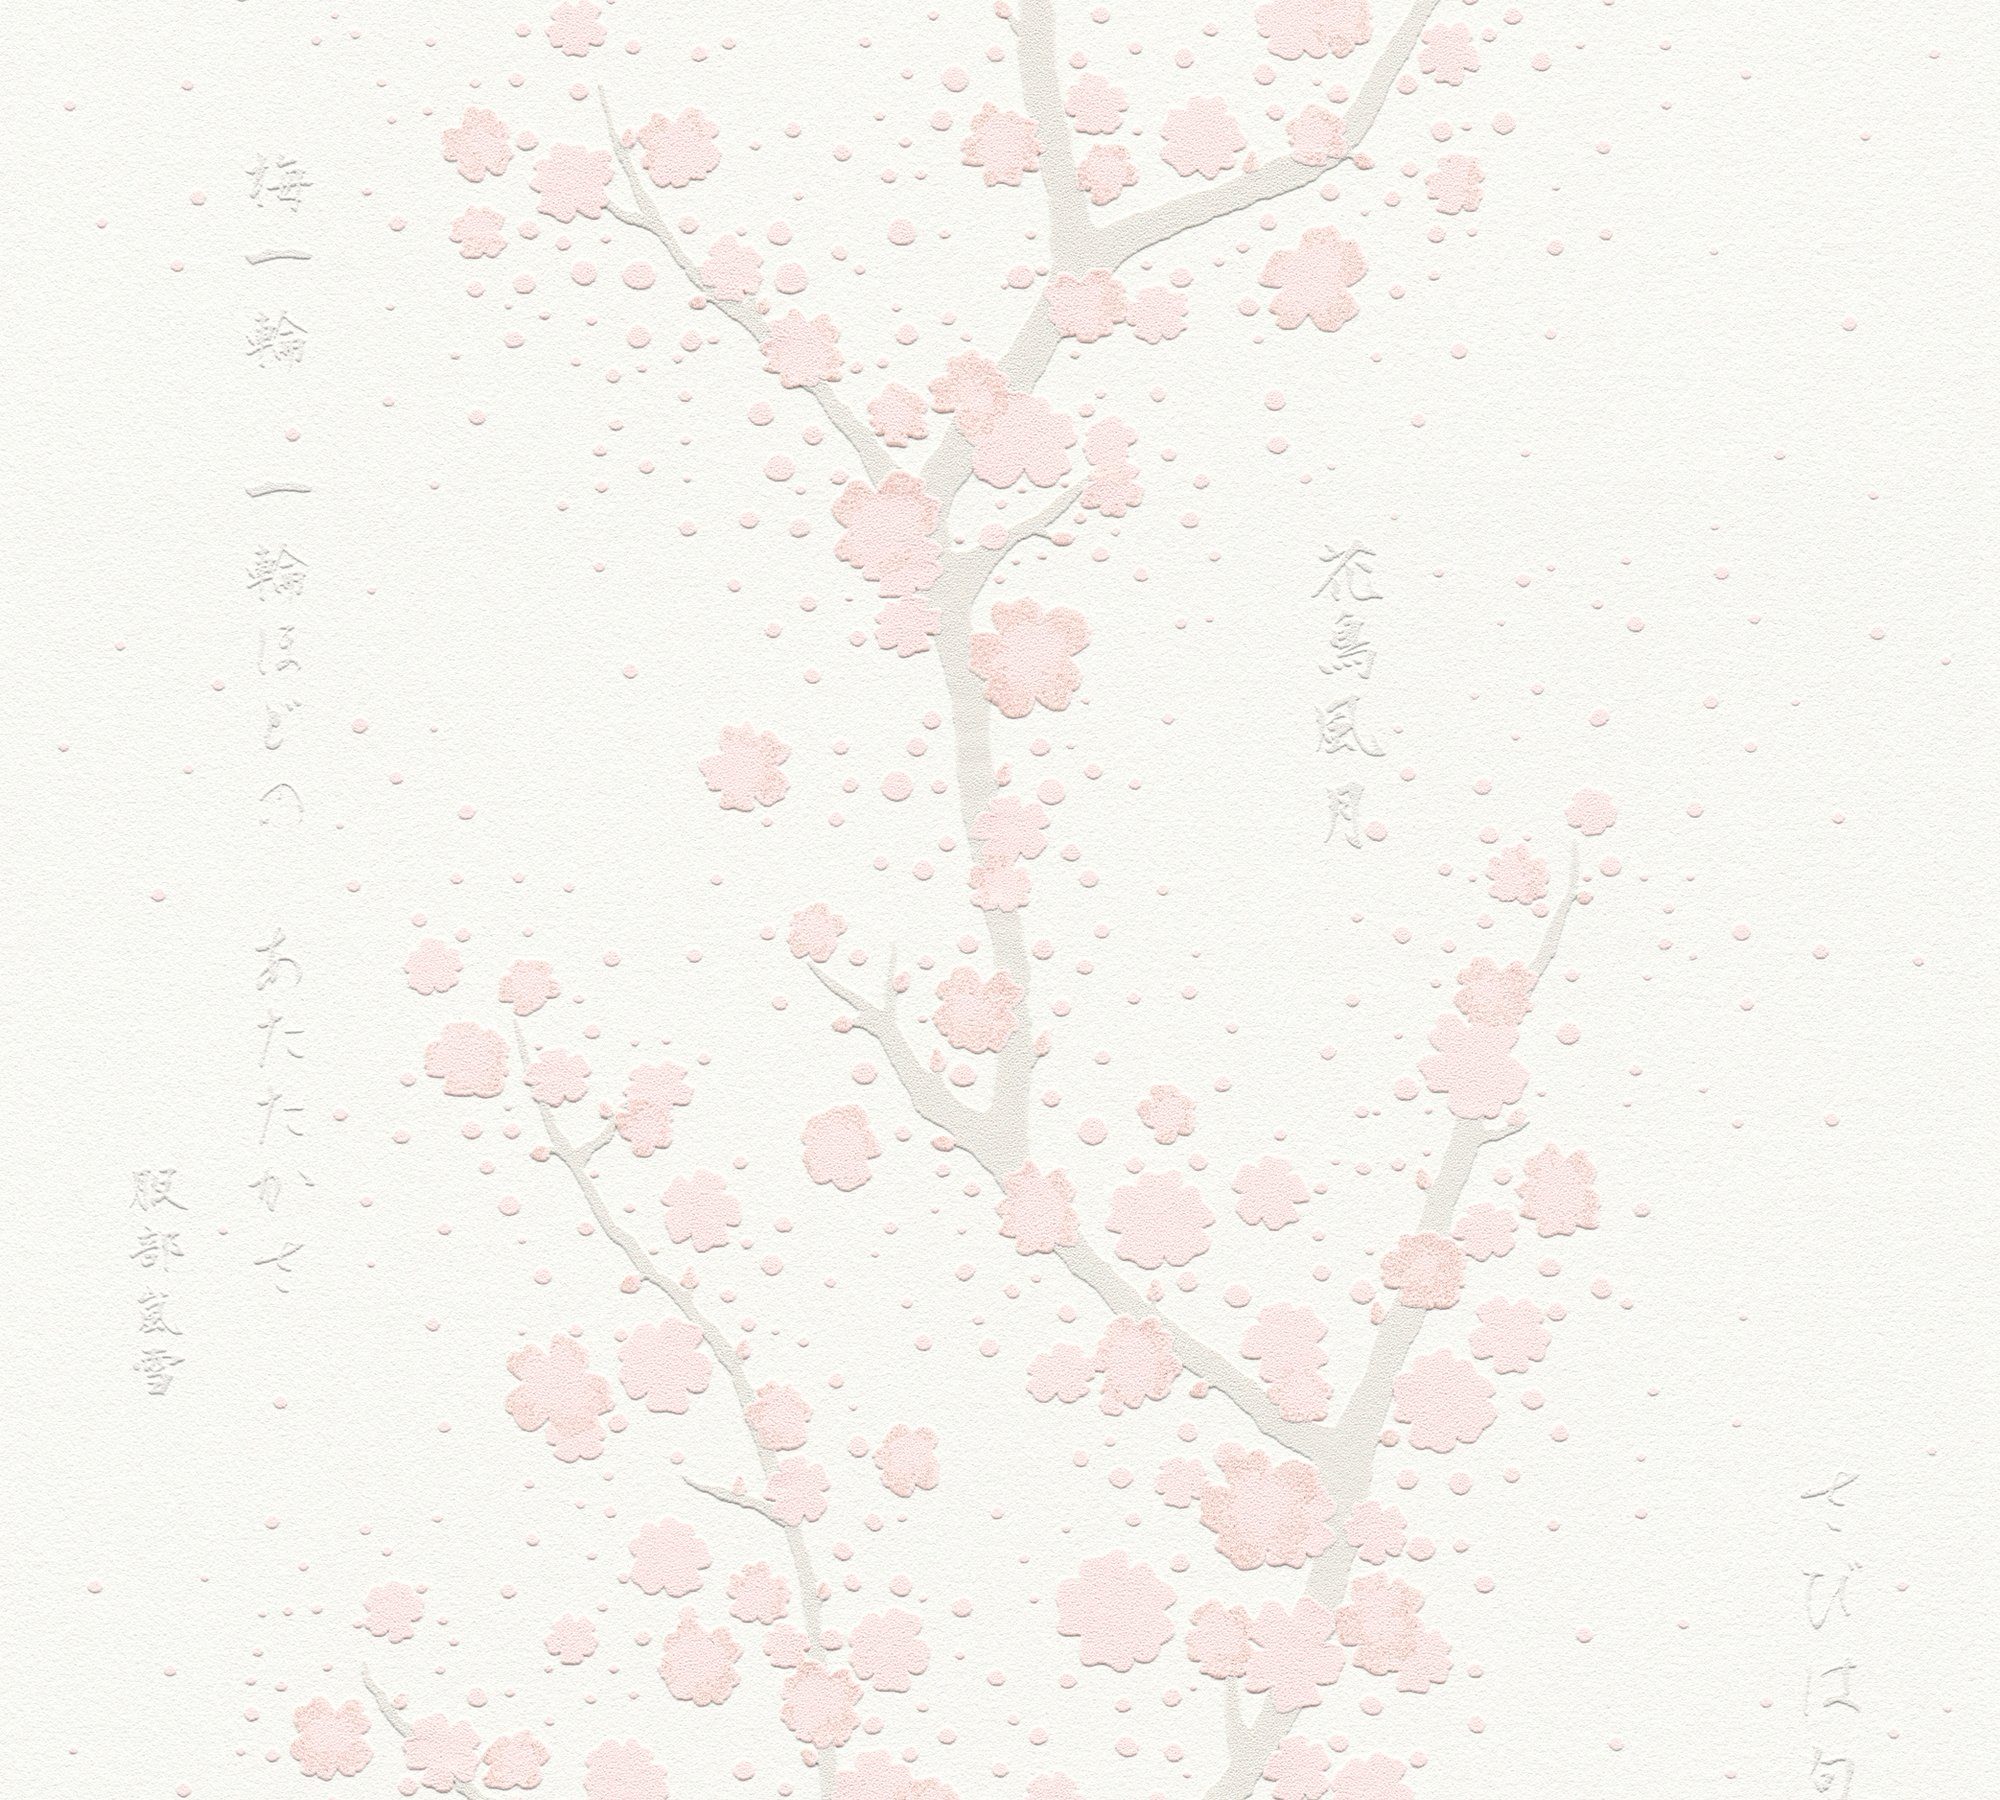 mit A.S. asiatisch, aufgeschäumt, Blumentapete Création Japanisch weiß/rosa/hellgrau floral, Fusion, Schrift, Vliestapete Tapete Asian